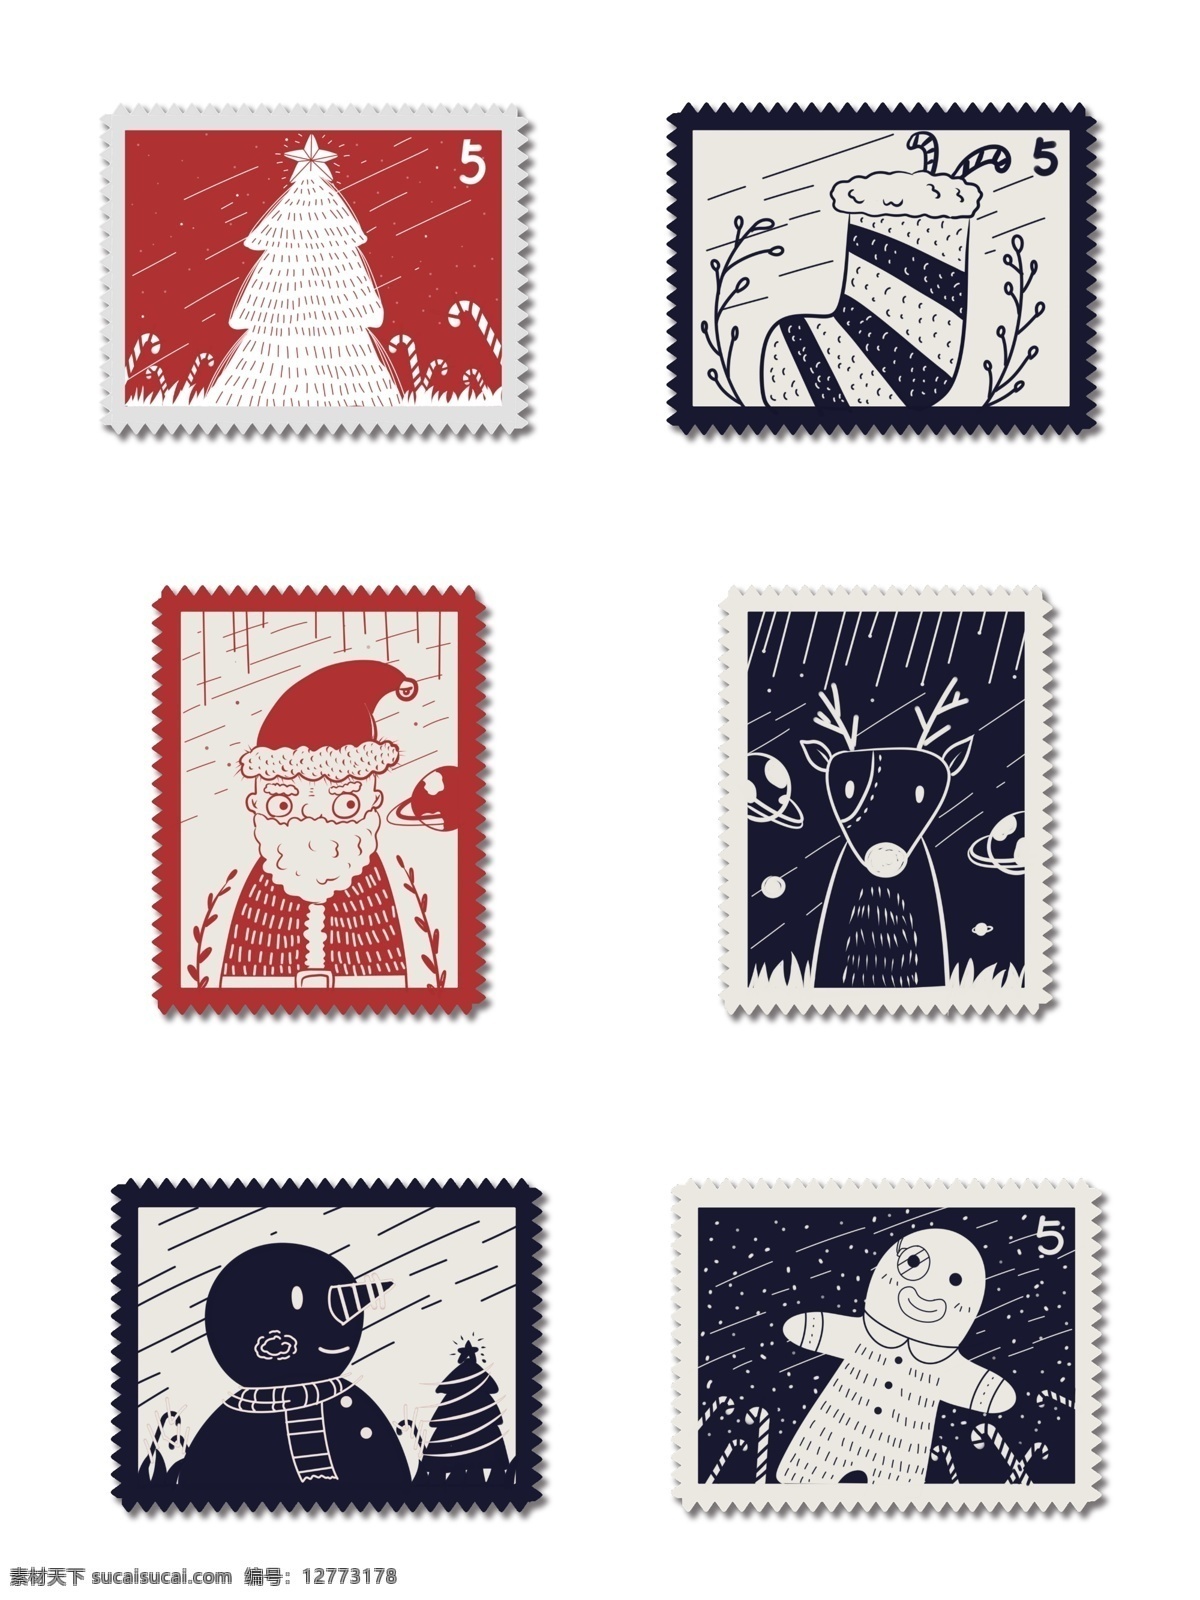 商用 手绘 圣诞 邮票 小 贴纸 圣诞节 节日 驯鹿 海报素材 圣诞树 圣诞老人 圣诞邮票 邮票贴纸 元素 袜子 圣诞驯鹿 雪人 姜饼人